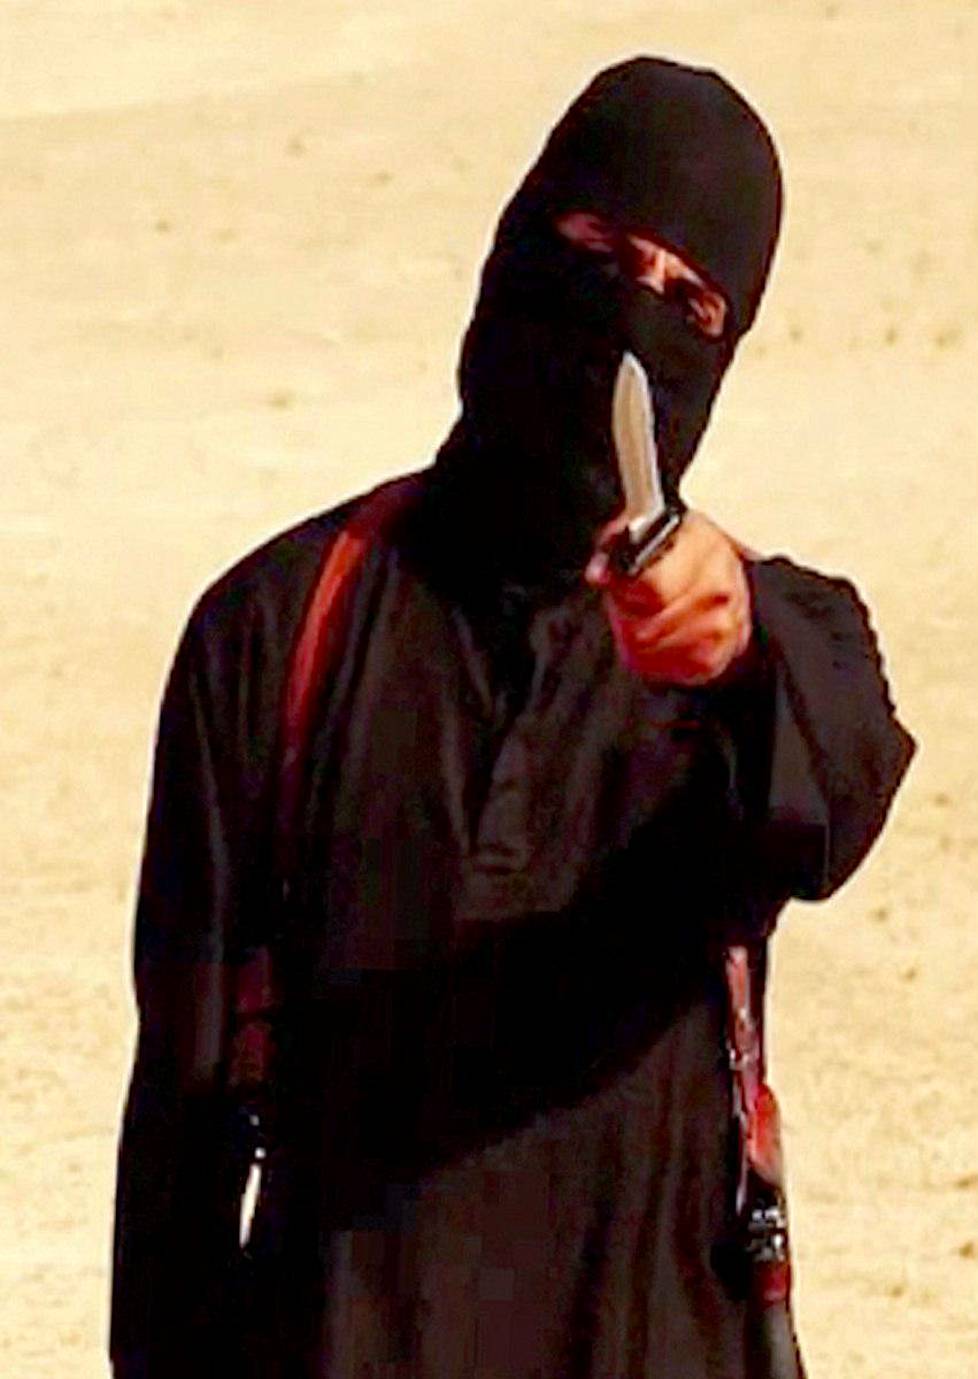 Syyskuussa 2014 Isisin tunnetuimpien hahmojen joukkoon nousi ”Jihadi John” -nimellä tunnettu brittimies, joka esiintyi useilla järjestön teloitusvideoilla. Kuva on kaappaus videolta, jolla mestattiin yhdysvaltalainen freelance-toimittaja Steven Sotloff, 31.